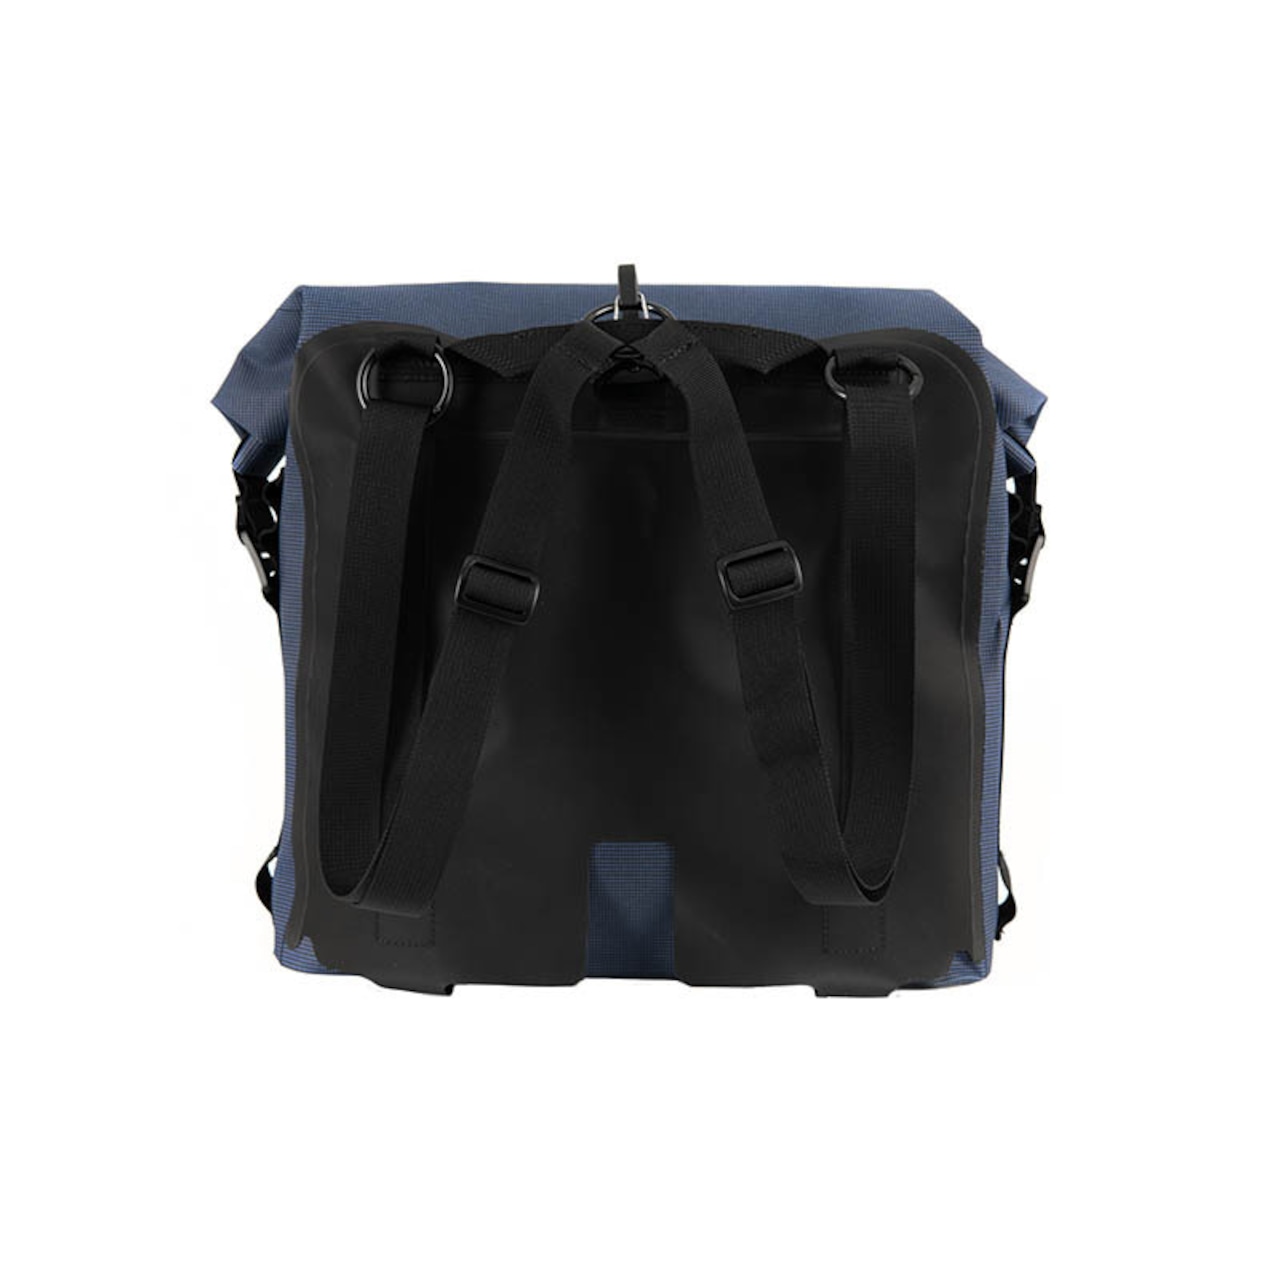 Roll Top Waterproof Bag 9L Navy